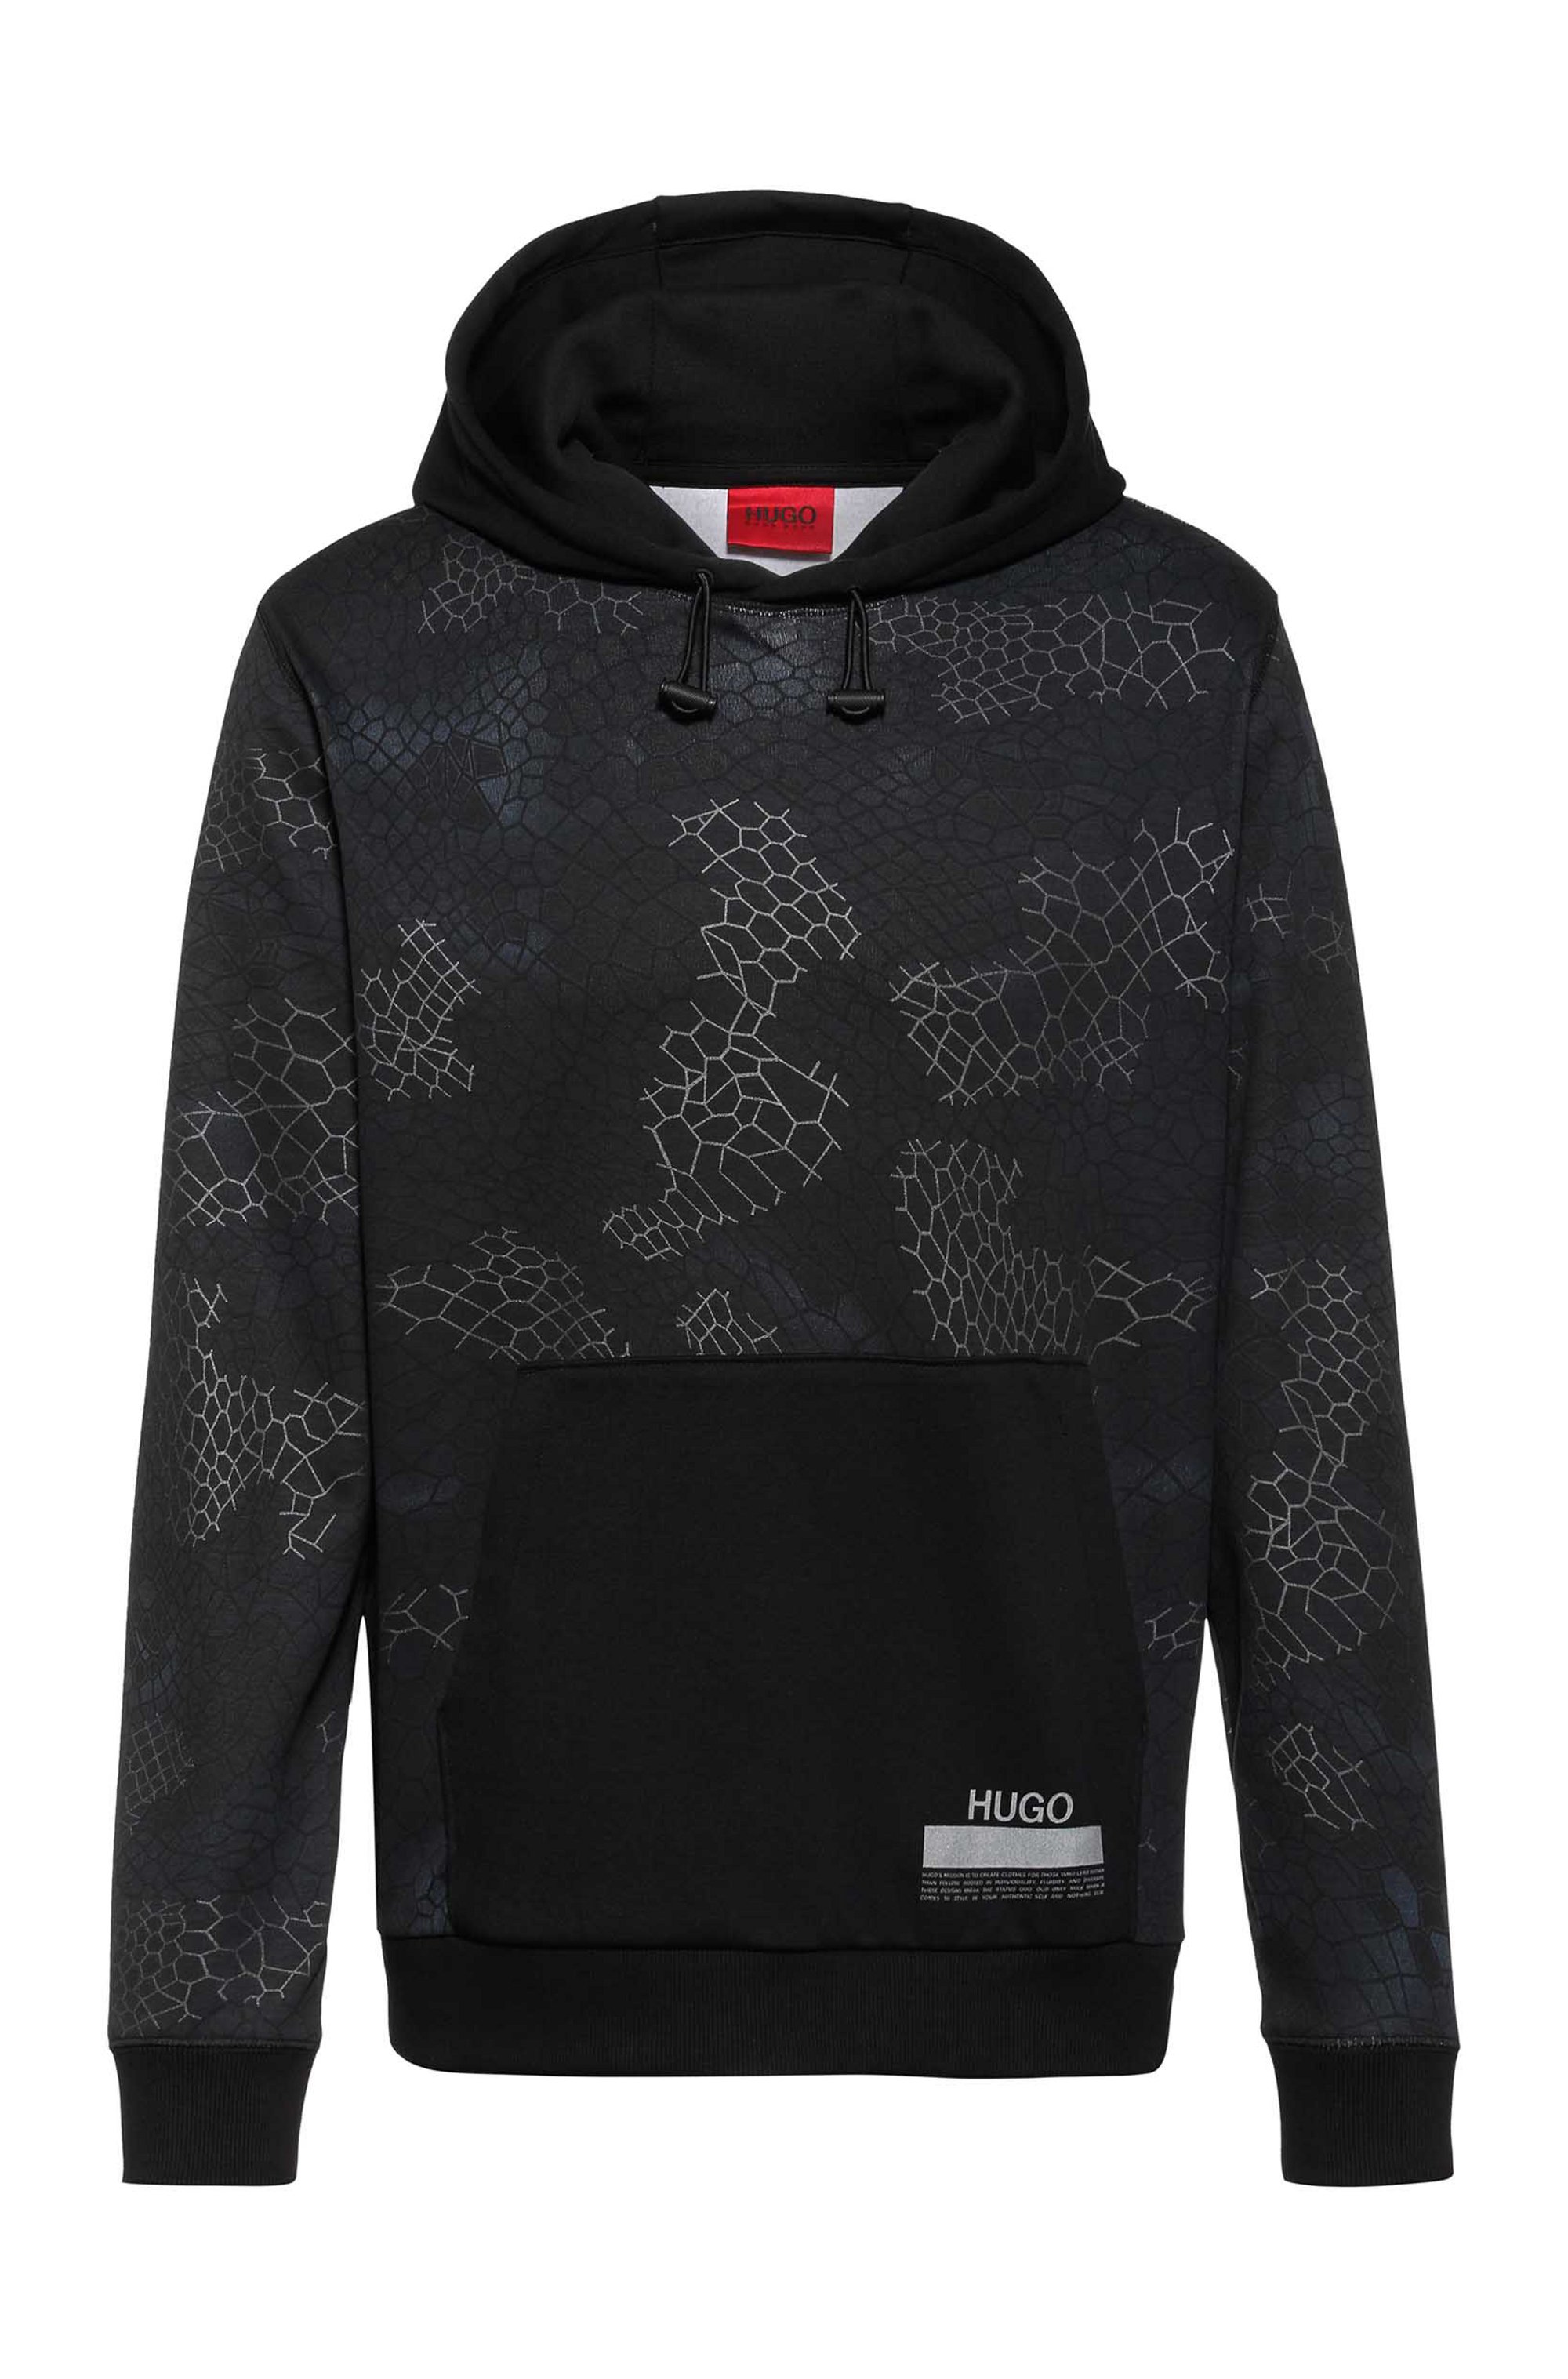 Snakeskin-print relaxed-fit hoodie in cotton interlock, Black